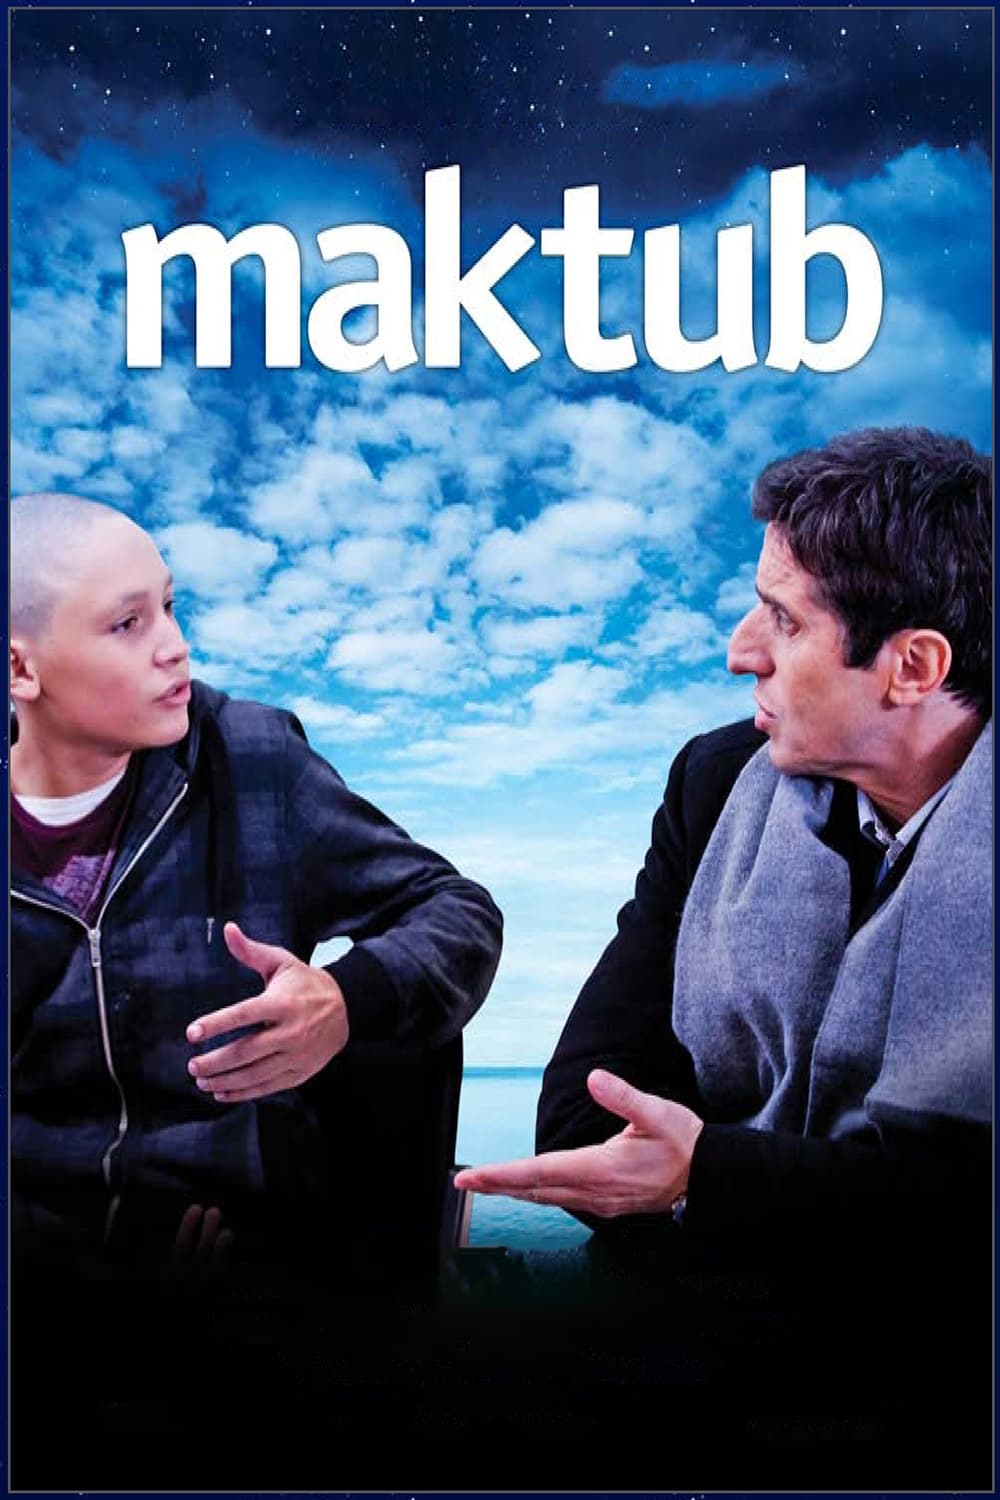 Maktub (2011)